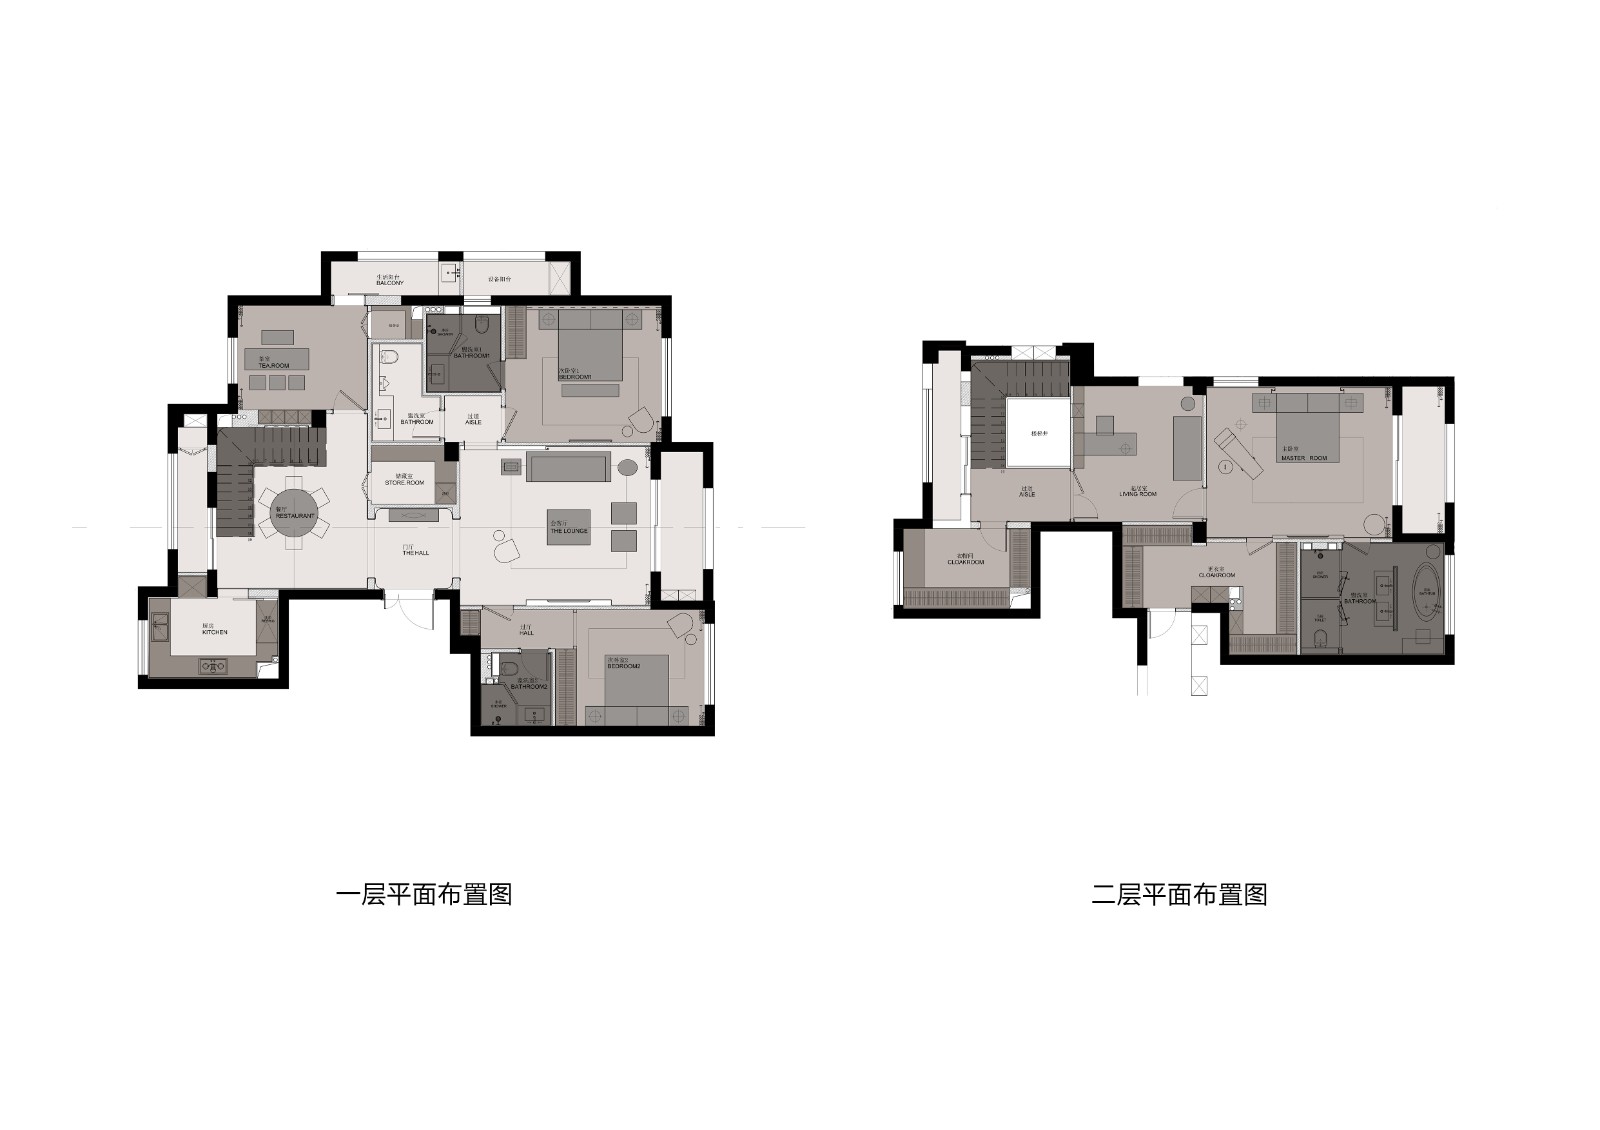 110现代两房装修效果图,诠释简约纯粹装修案例效果图-美广网(图1)